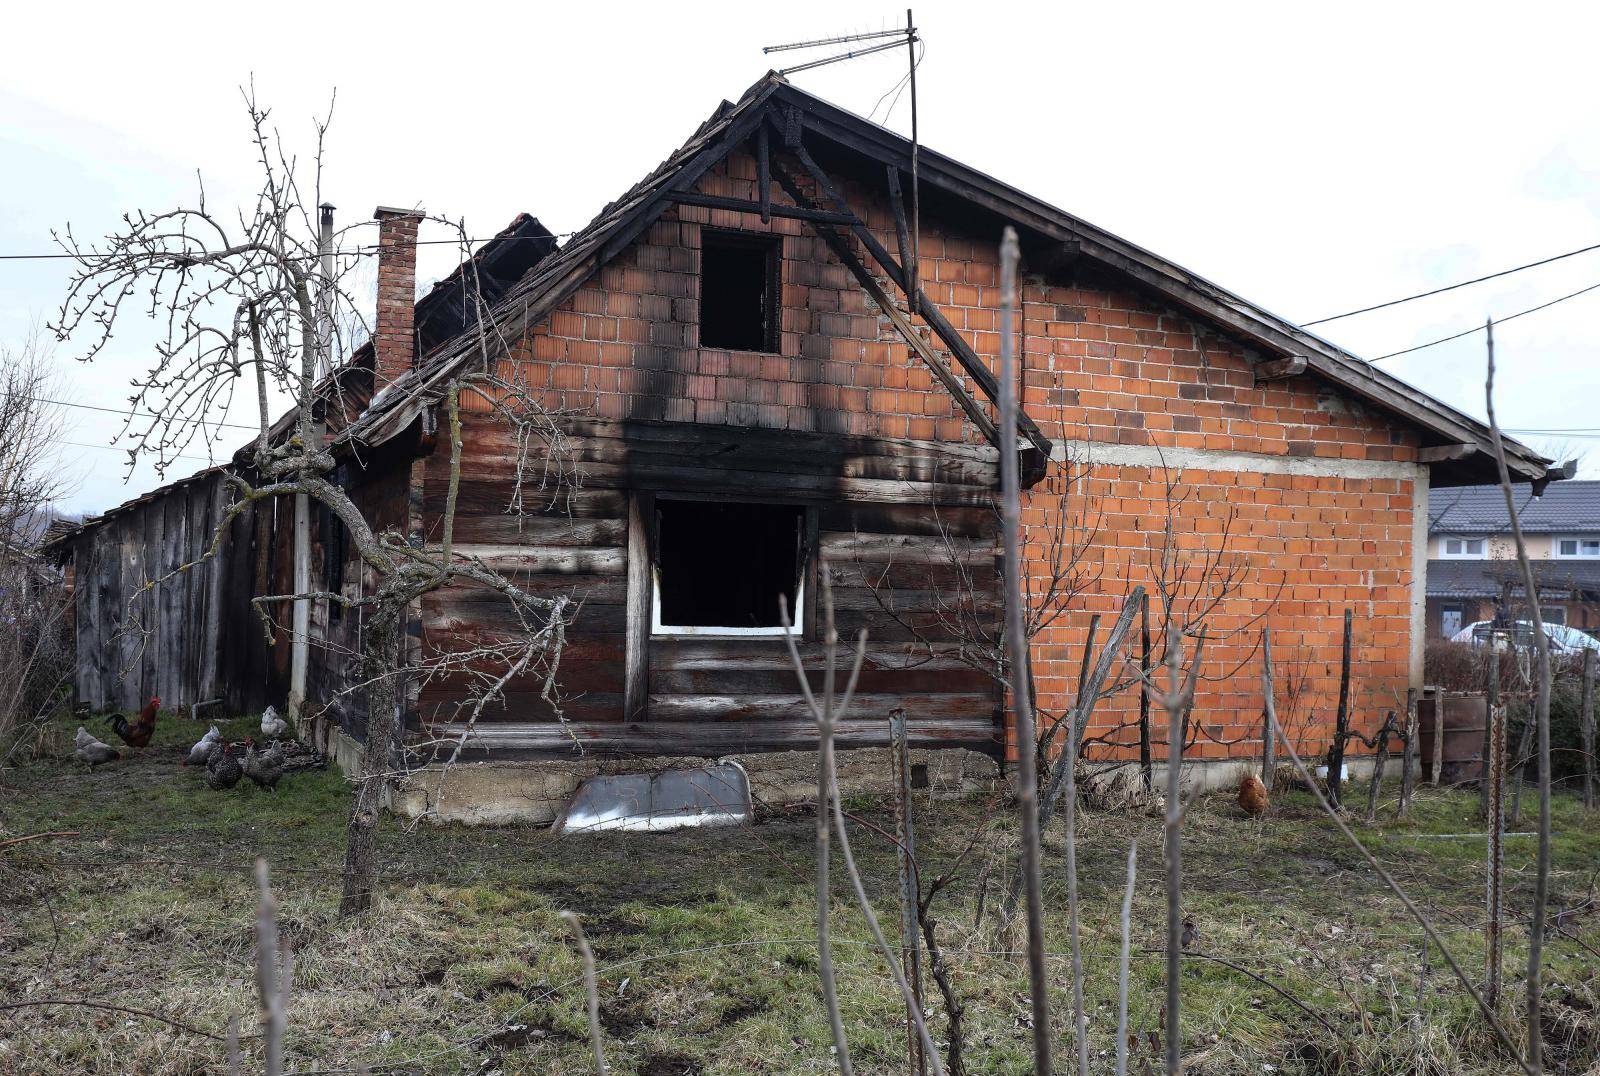 Barbarići Kravarski: Jedna osoba poginula u požaru obiteljske kuće